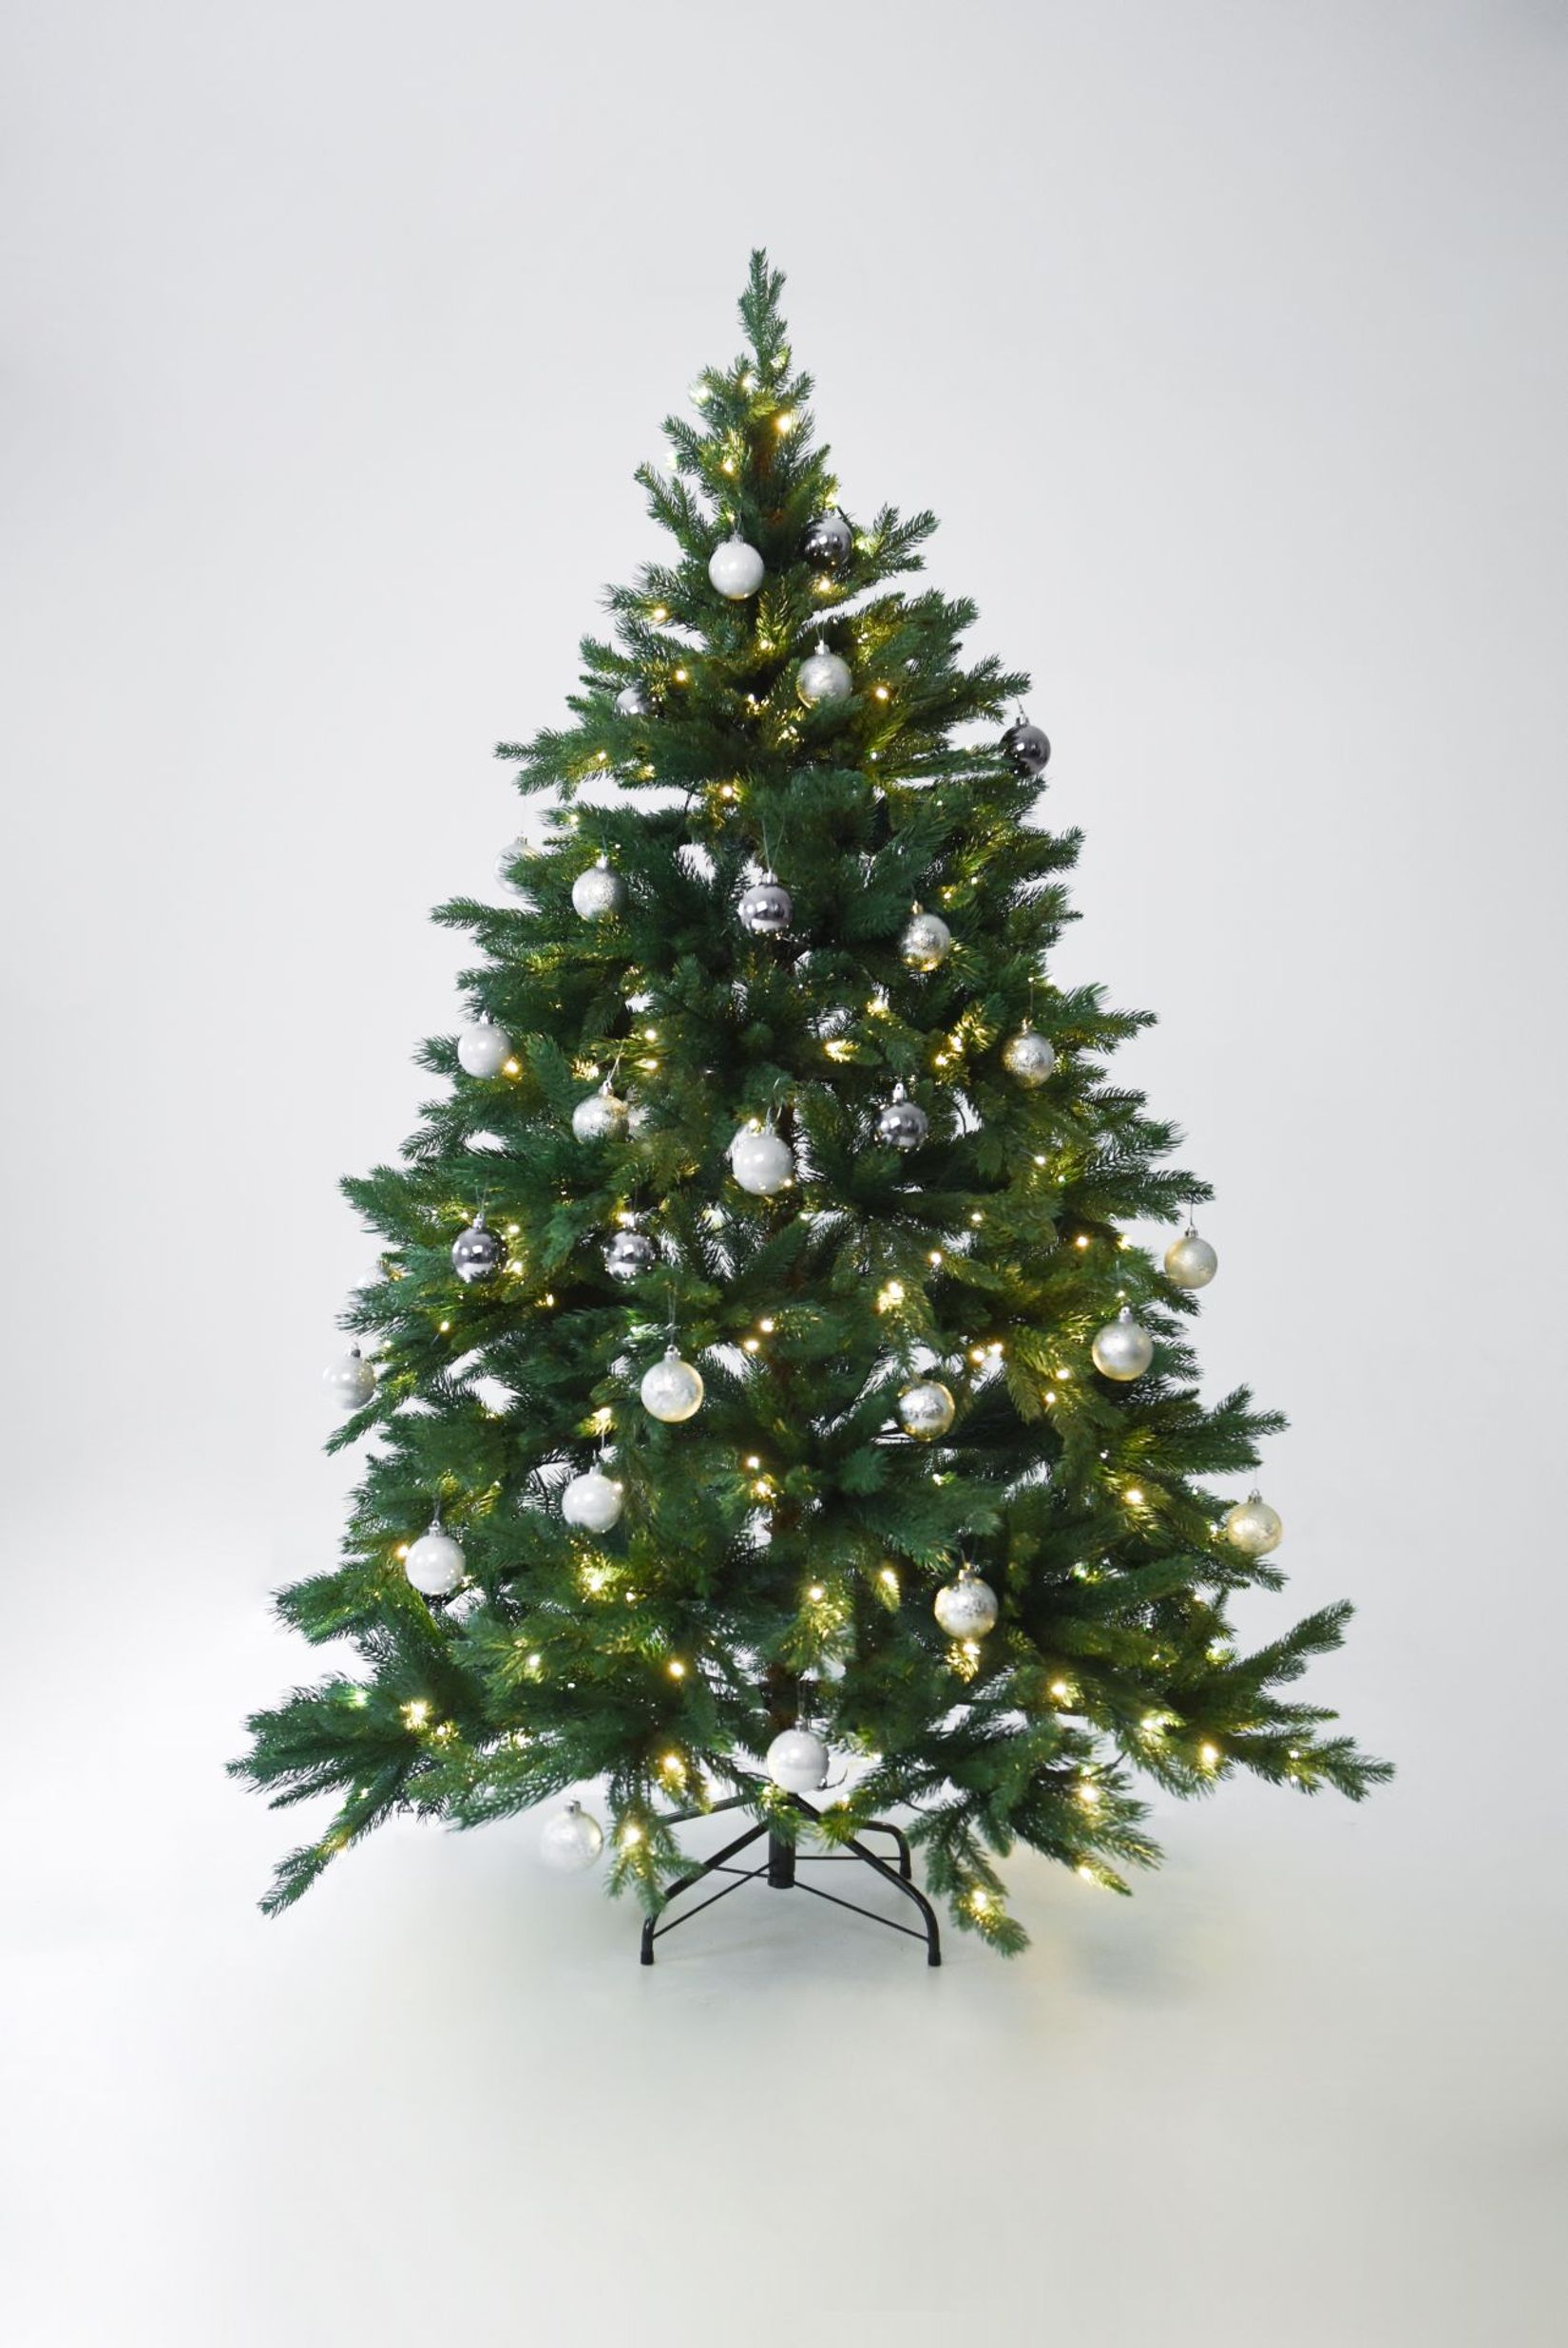 Künstlicher Premium Weihnachtsbaum Nordmanntanne LED, 150 cm hoch